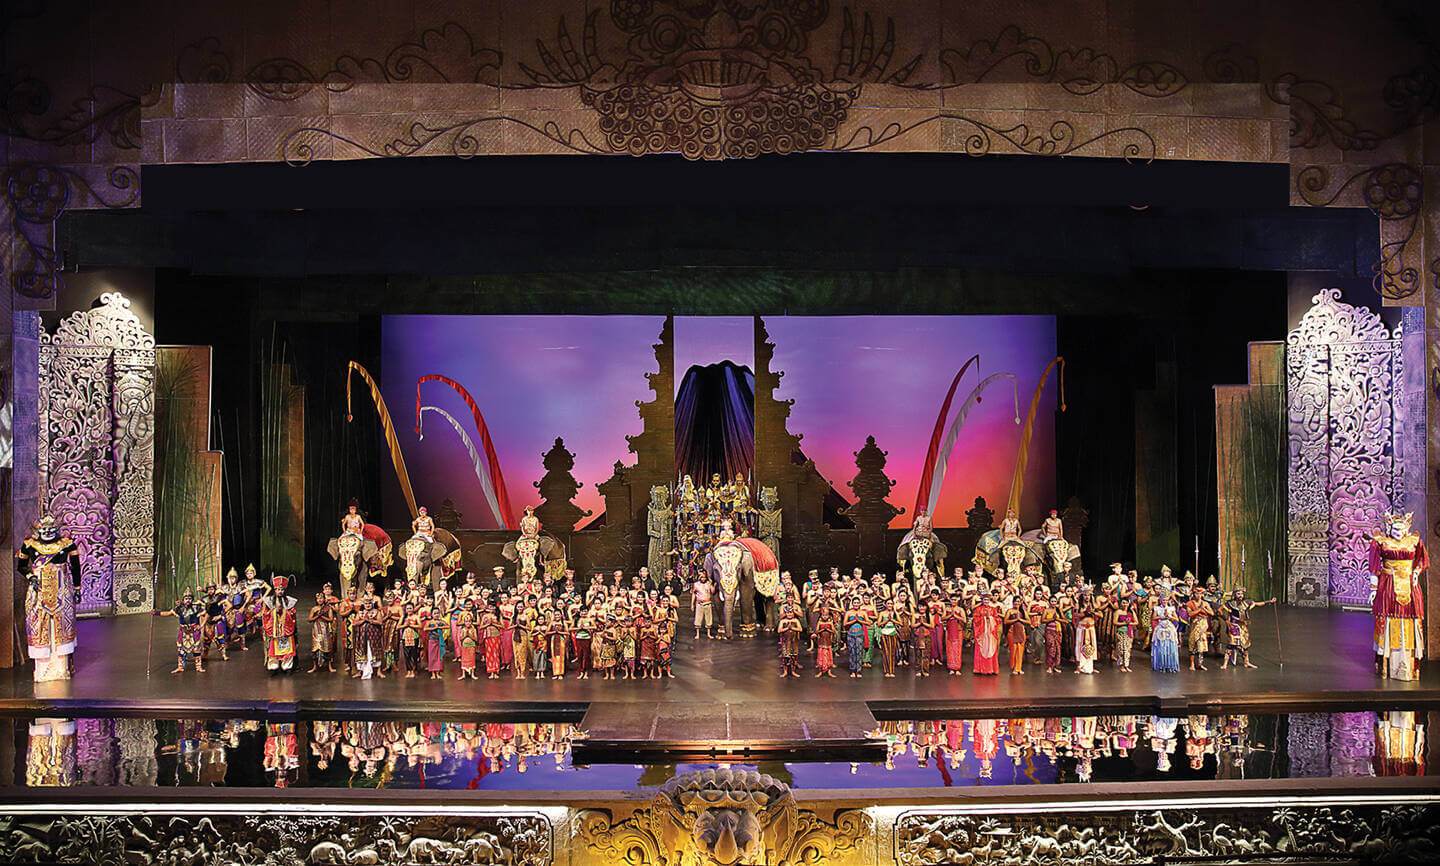 Bali Agung Show